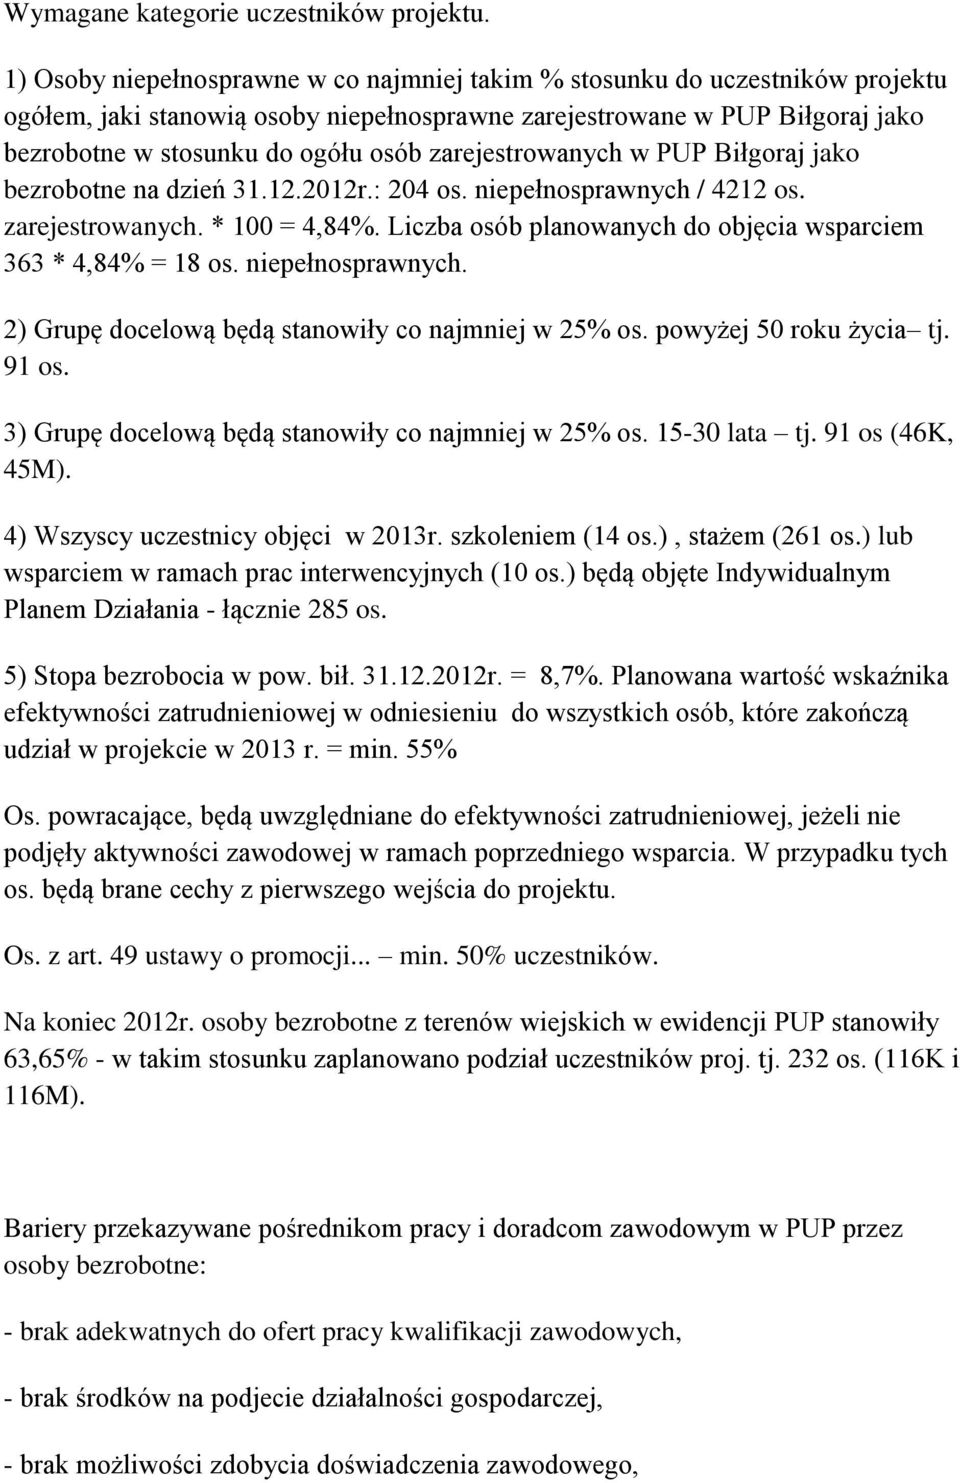 zarejestrowanych w PUP Biłgoraj jako bezrobotne na dzień 31.12.2012r.: 204 os. niepełnosprawnych / 4212 os. zarejestrowanych. * 100 = 4,84%.